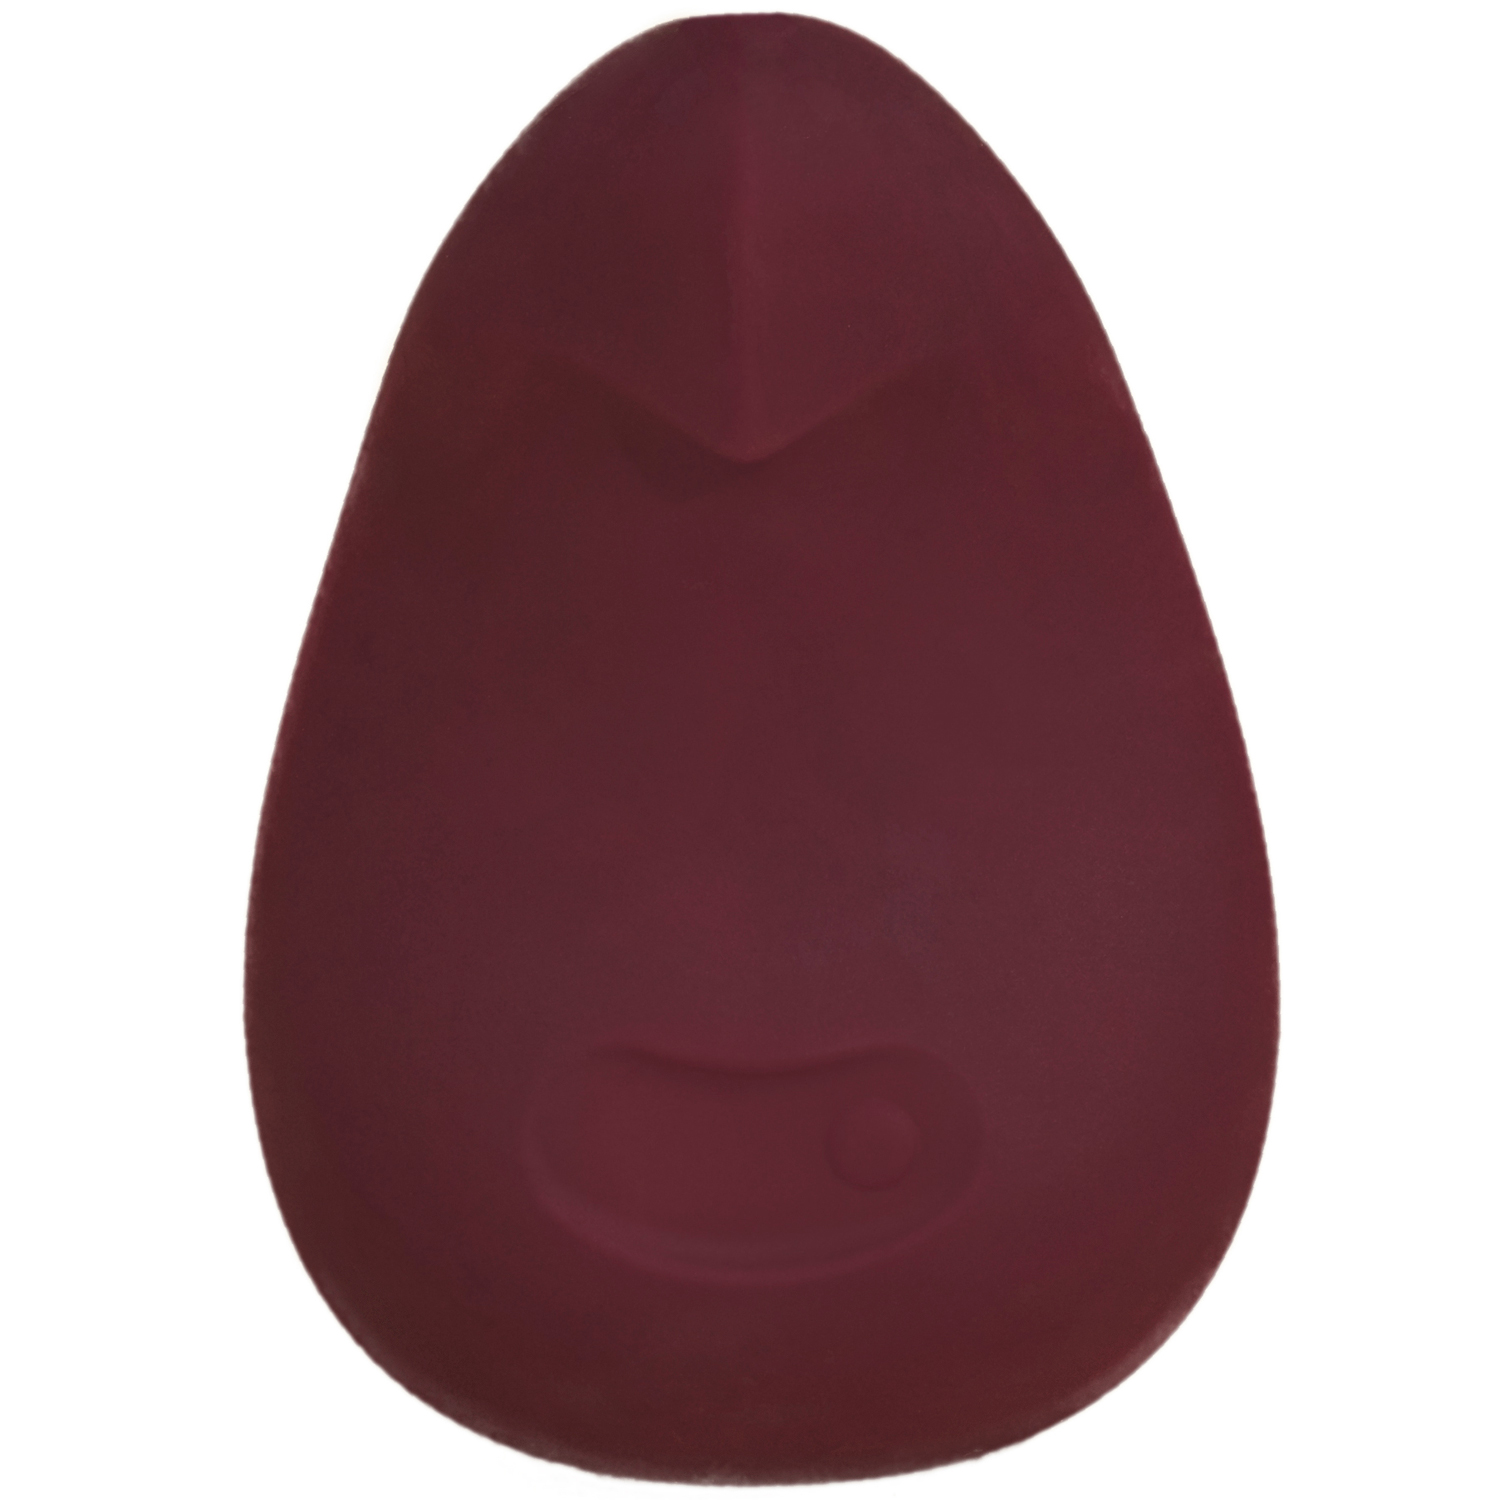 Dame Products POM Fleksibel Klitoris Vibrator      - Bordeaux thumbnail